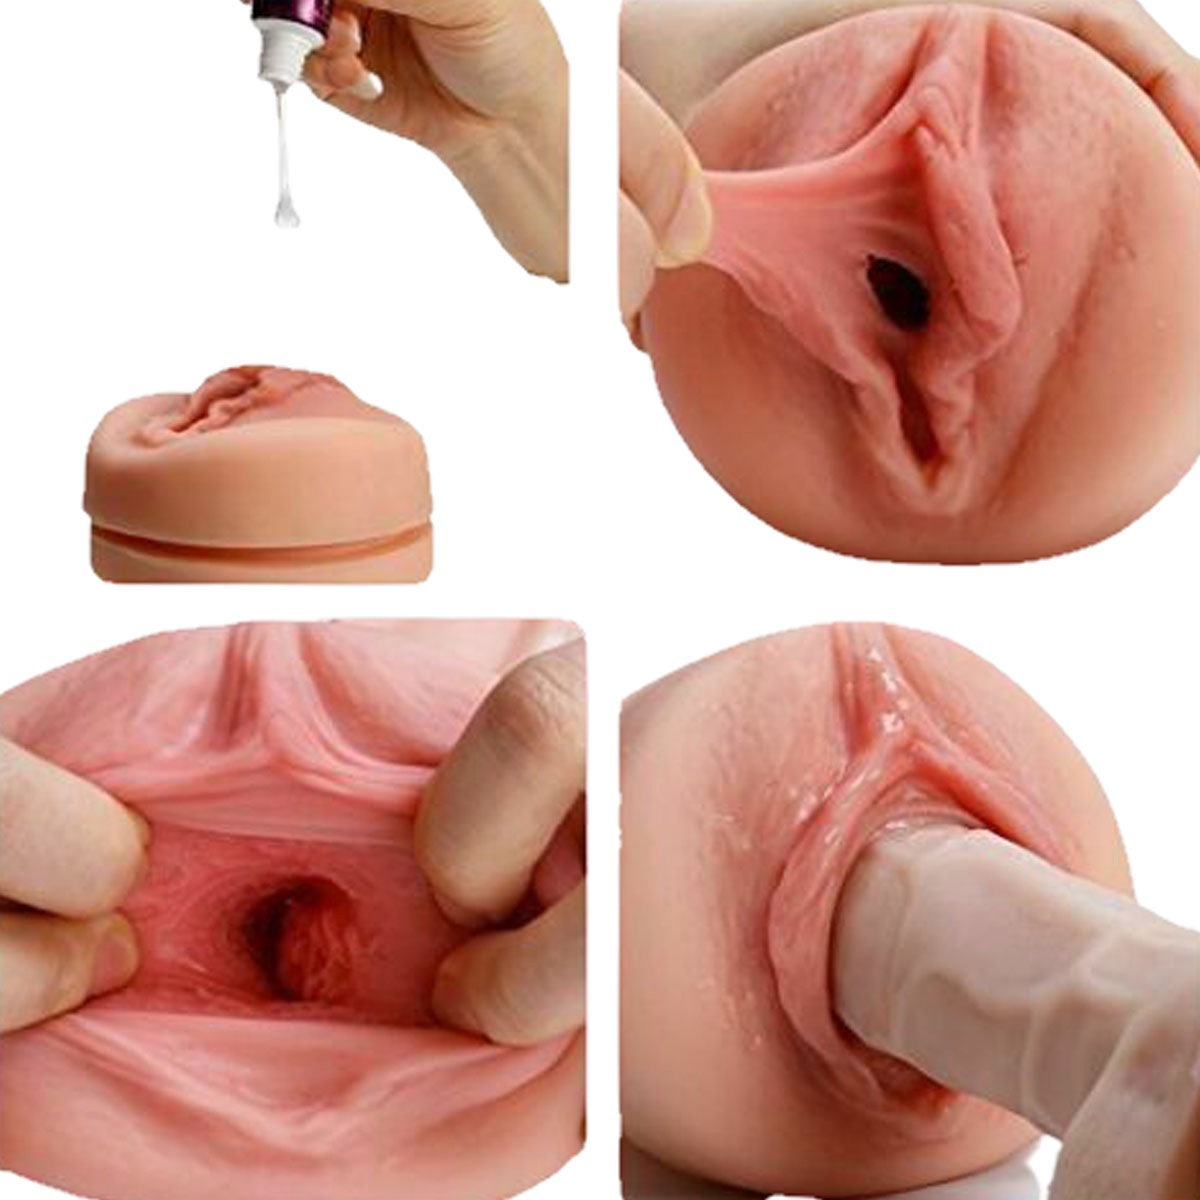 мастурбация искусственной вагиной гиф фото 98